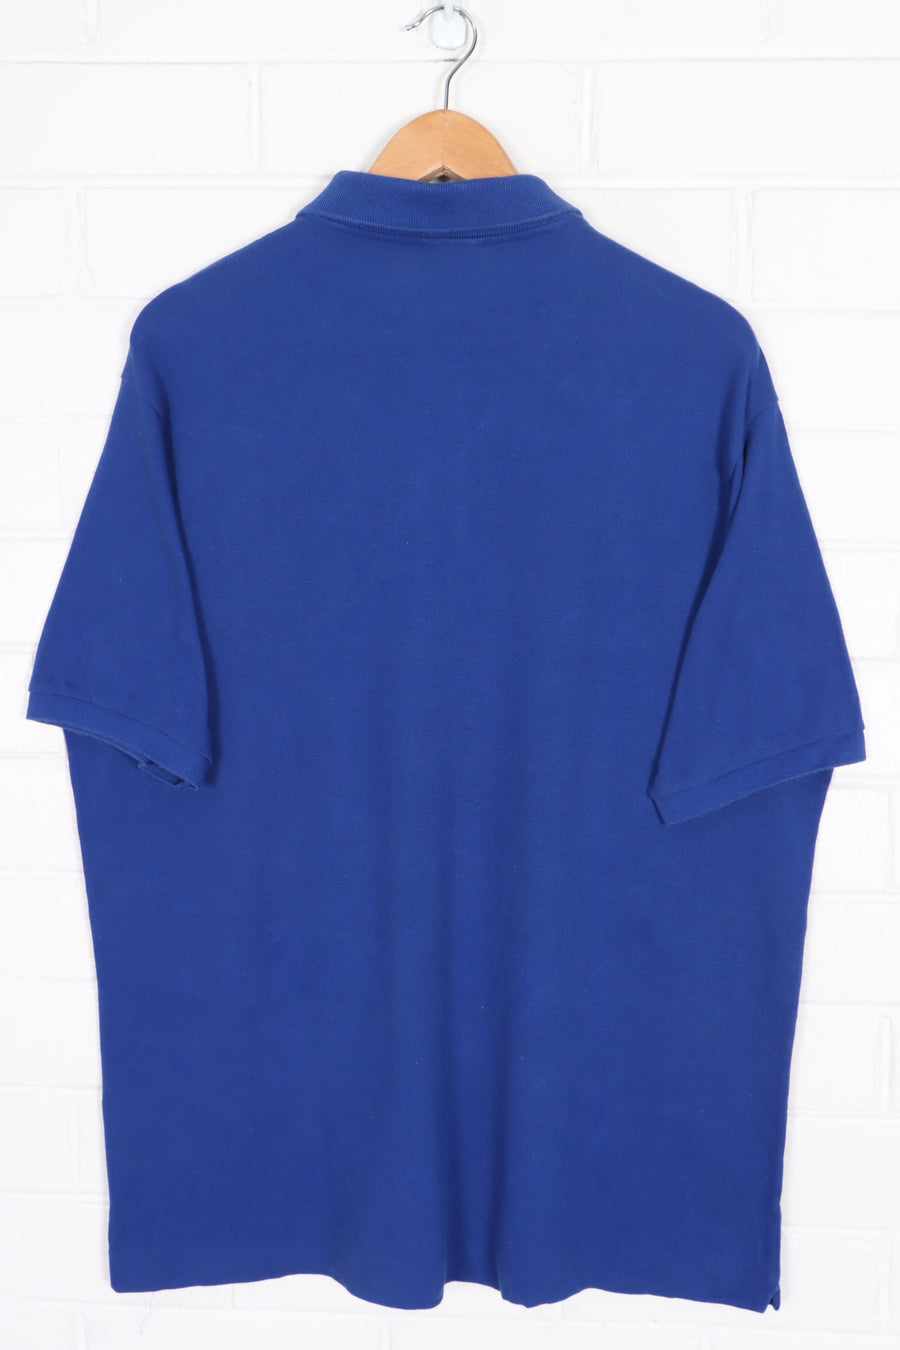 LACOSTE Cobalt Blue Classic Polo Shirt (XL)